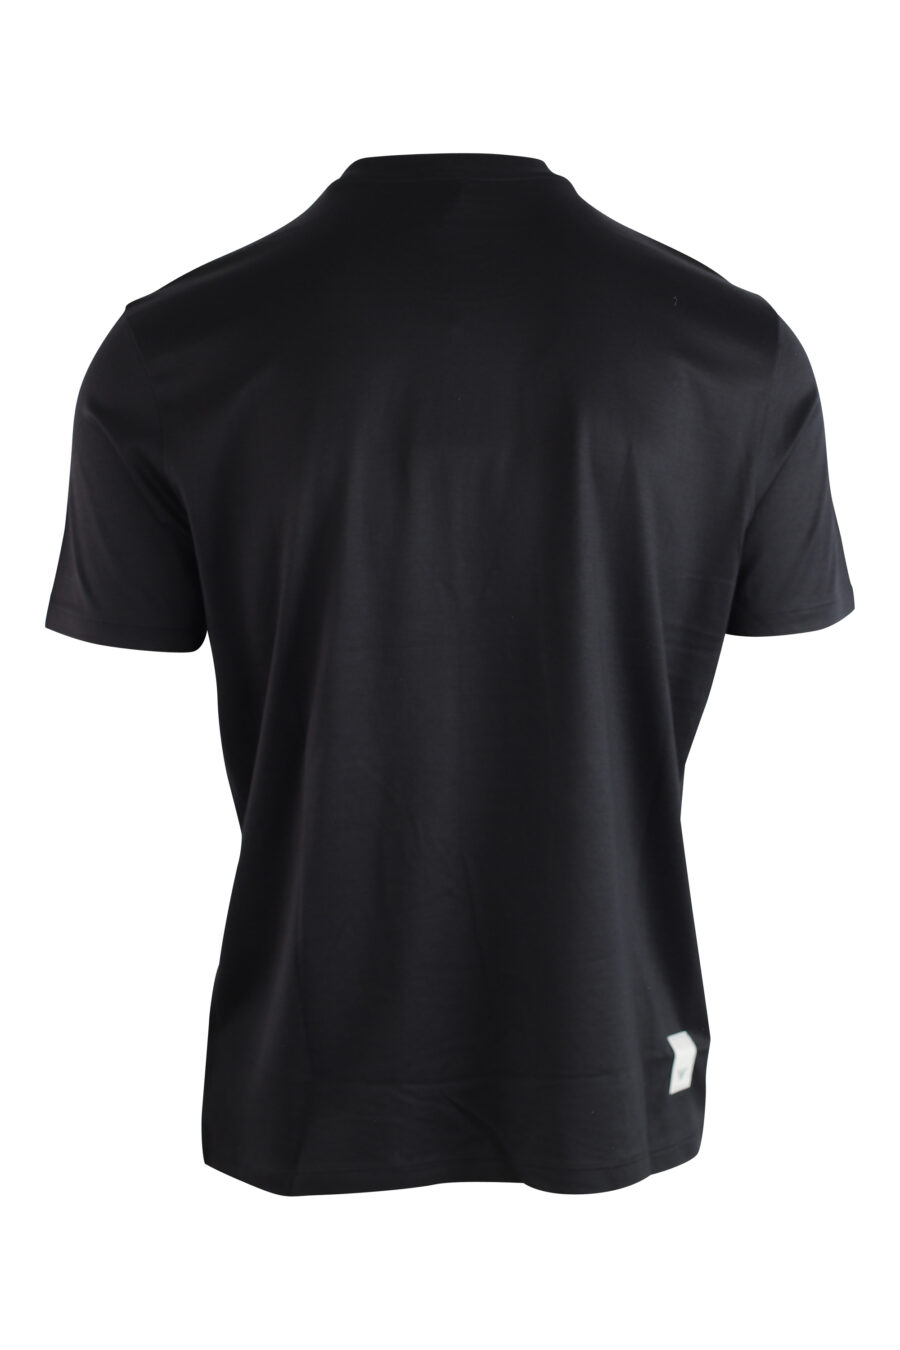 T-shirt noir avec logo mini aigle - IMG 3736